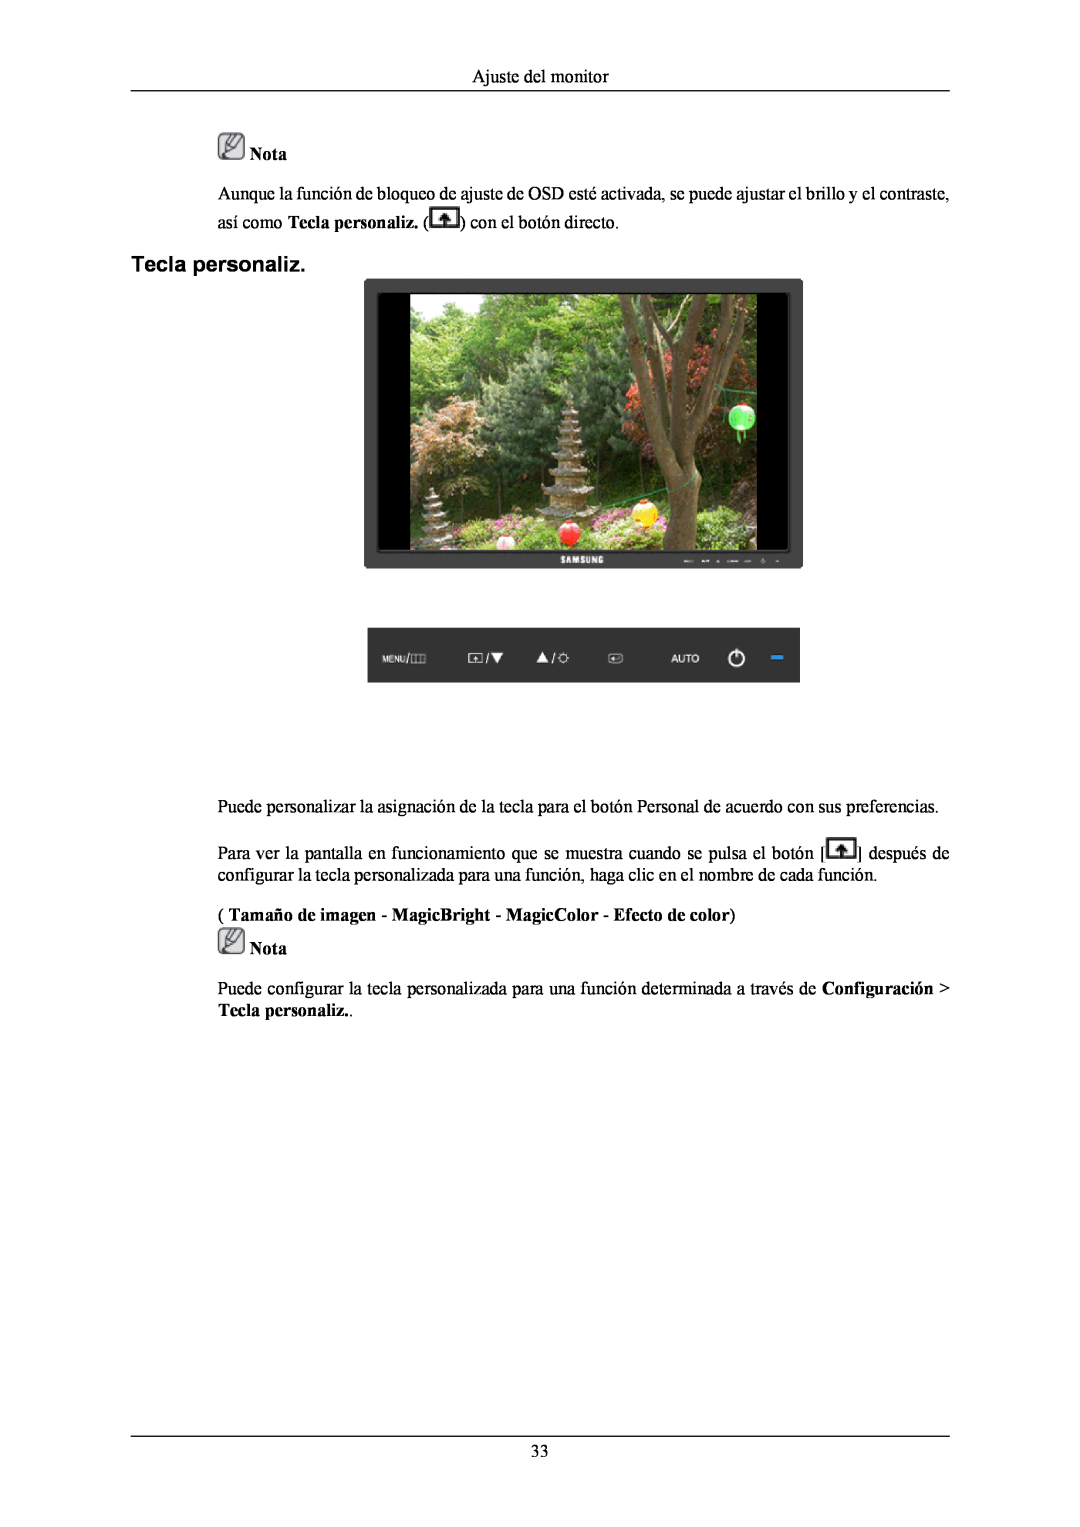 Samsung LS19MYNKFNA/EN manual Tecla personaliz, Tamaño de imagen - MagicBright - MagicColor - Efecto de color Nota 